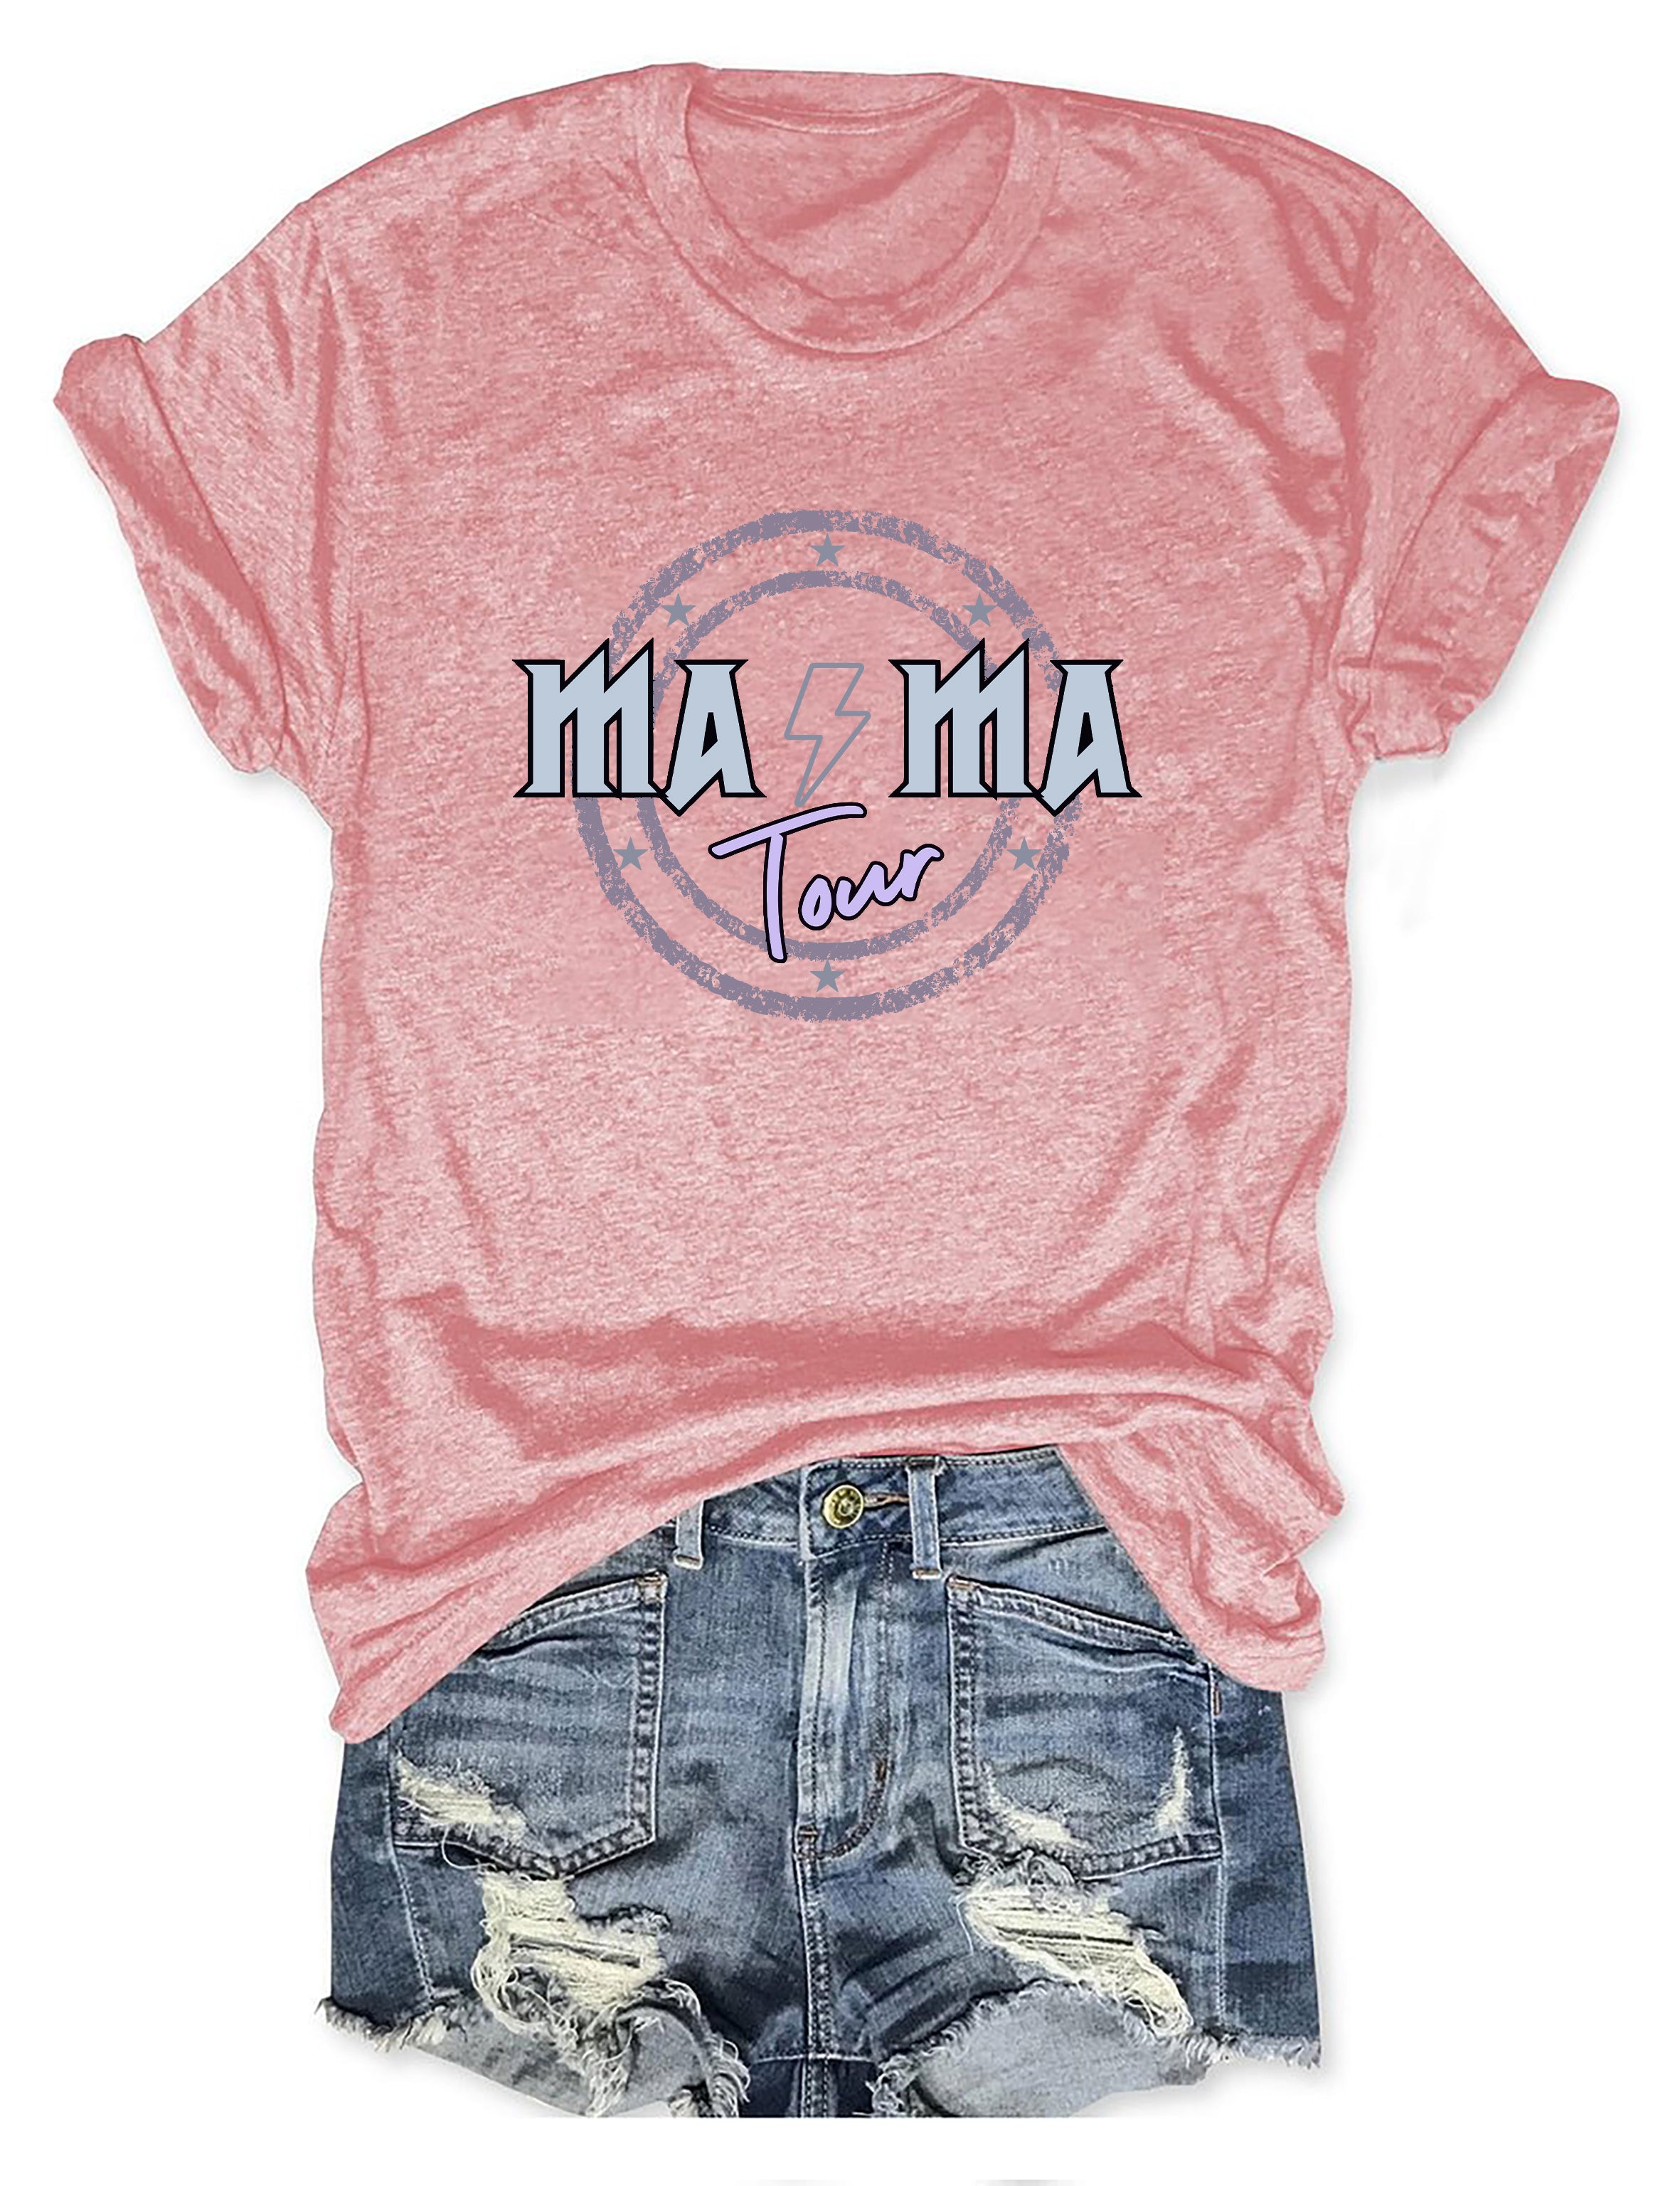 Mama Rock Tour T-shirt